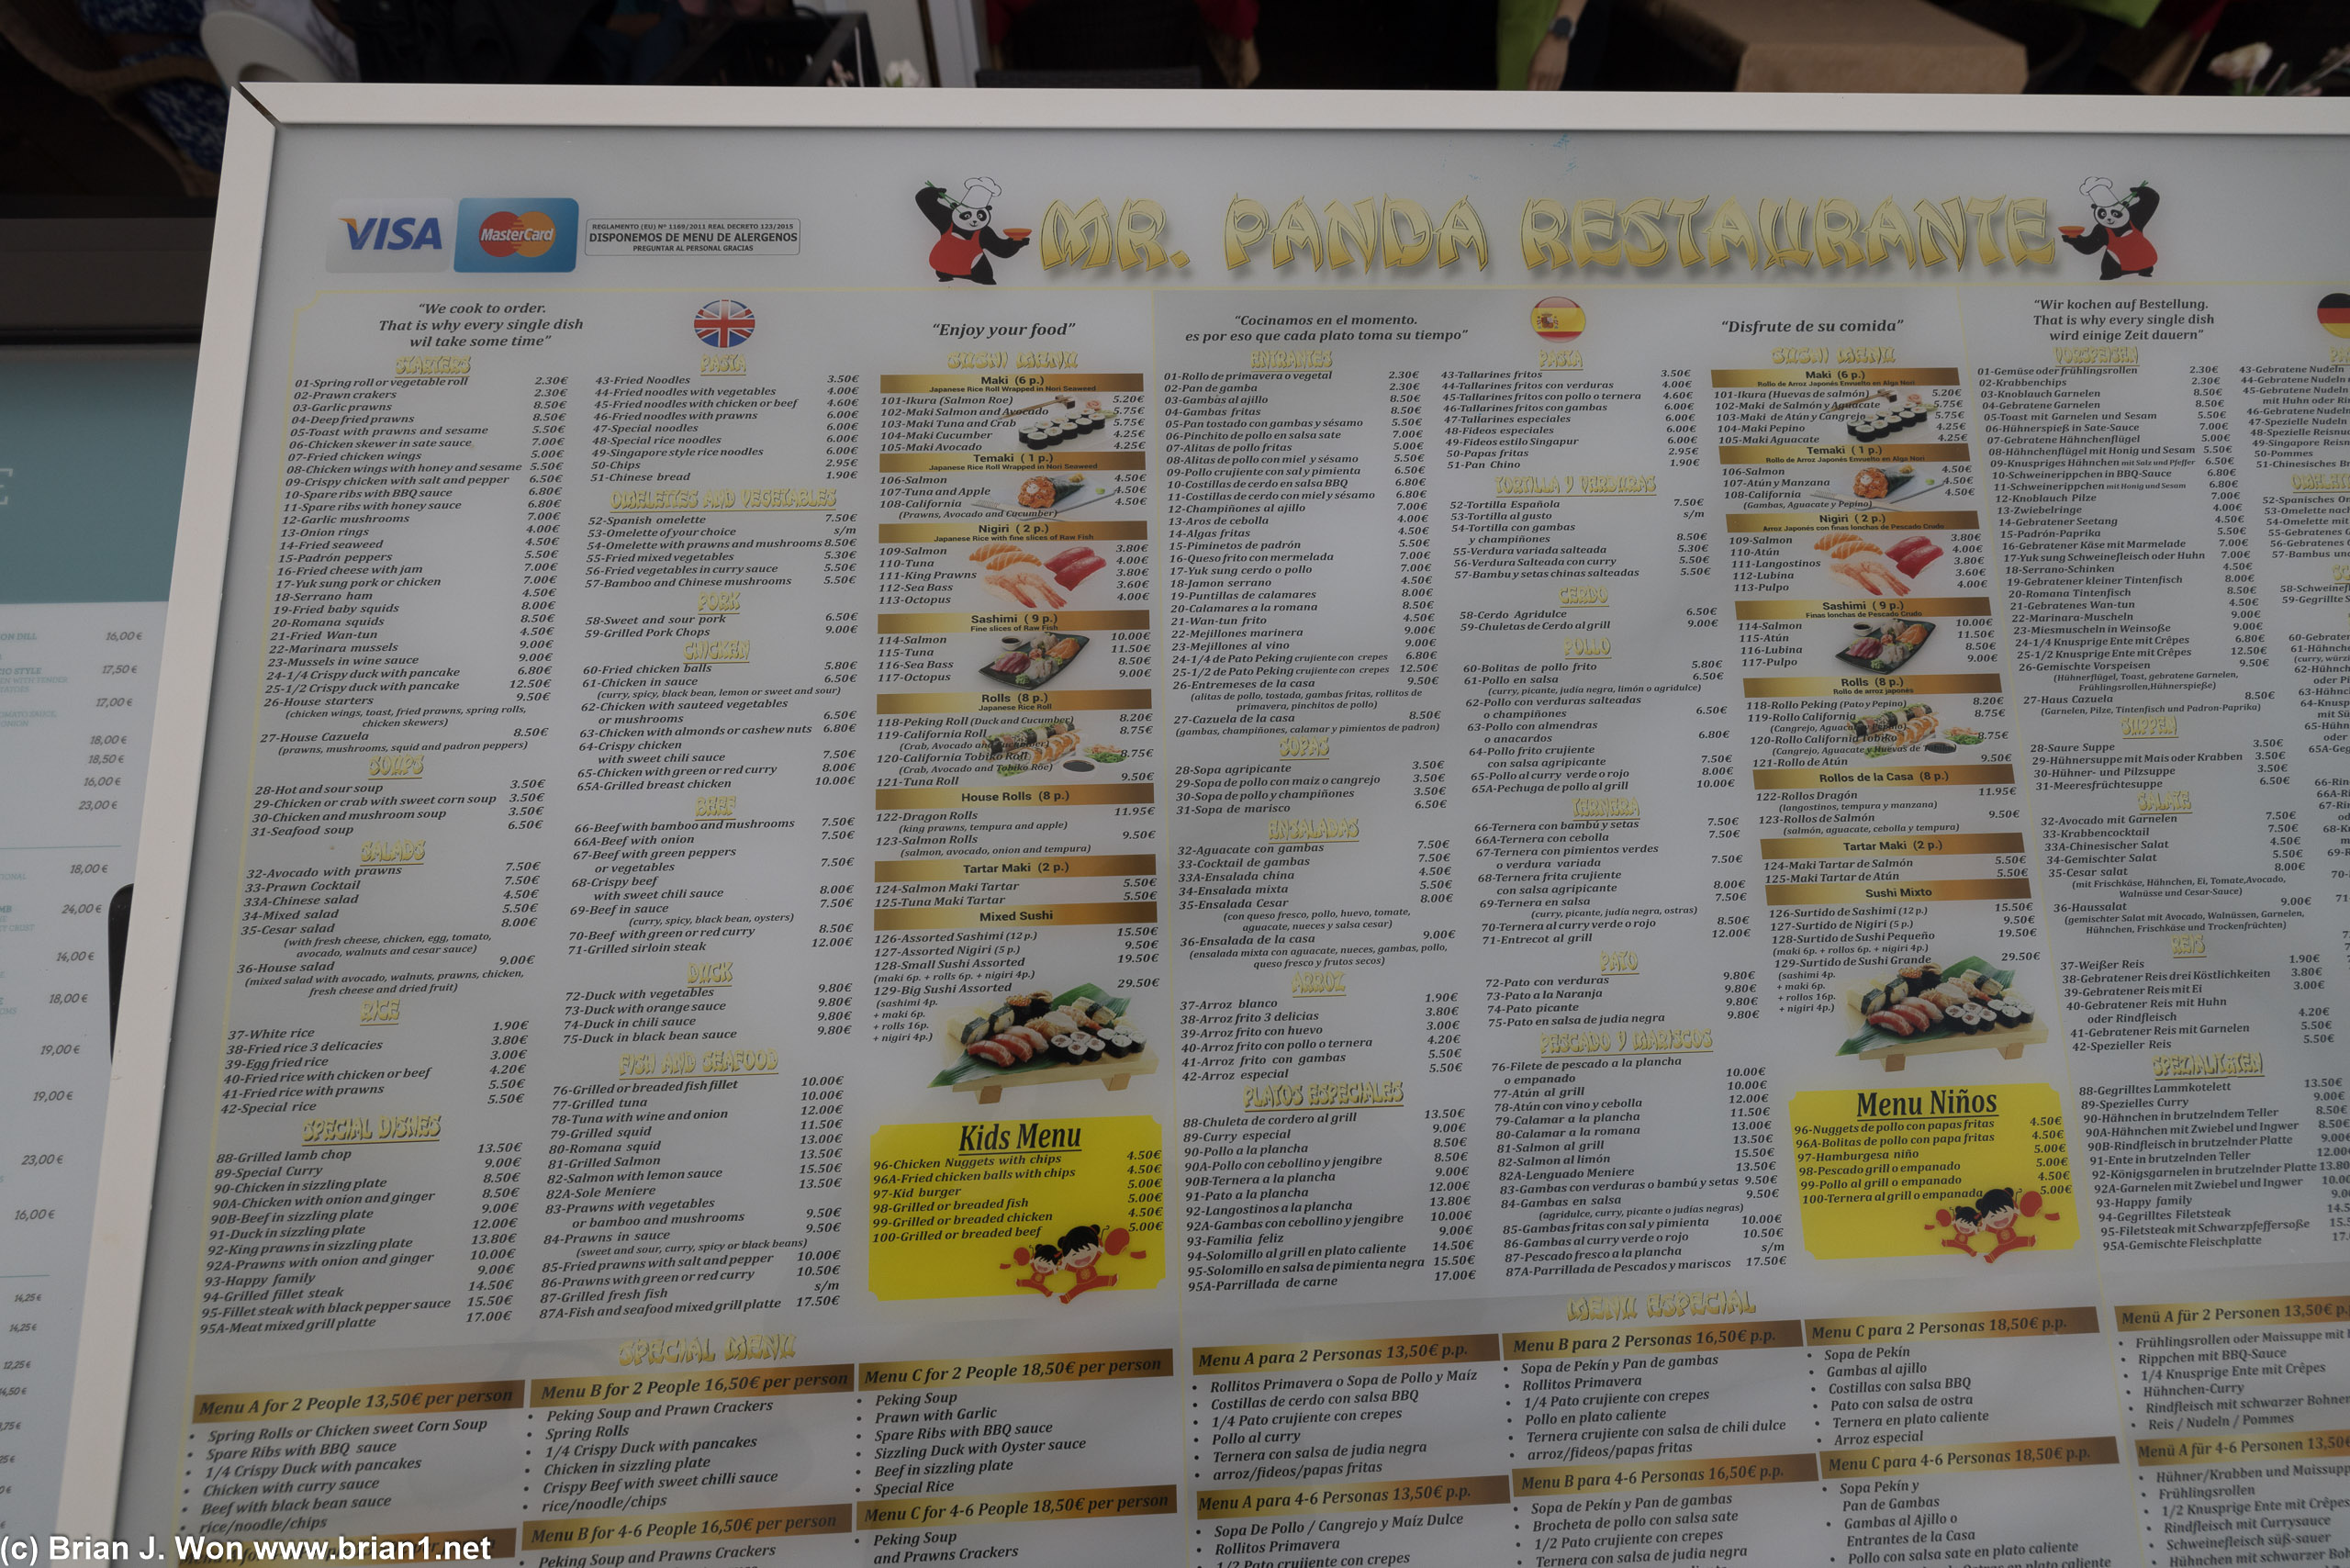 The menu at Mr. Panda.